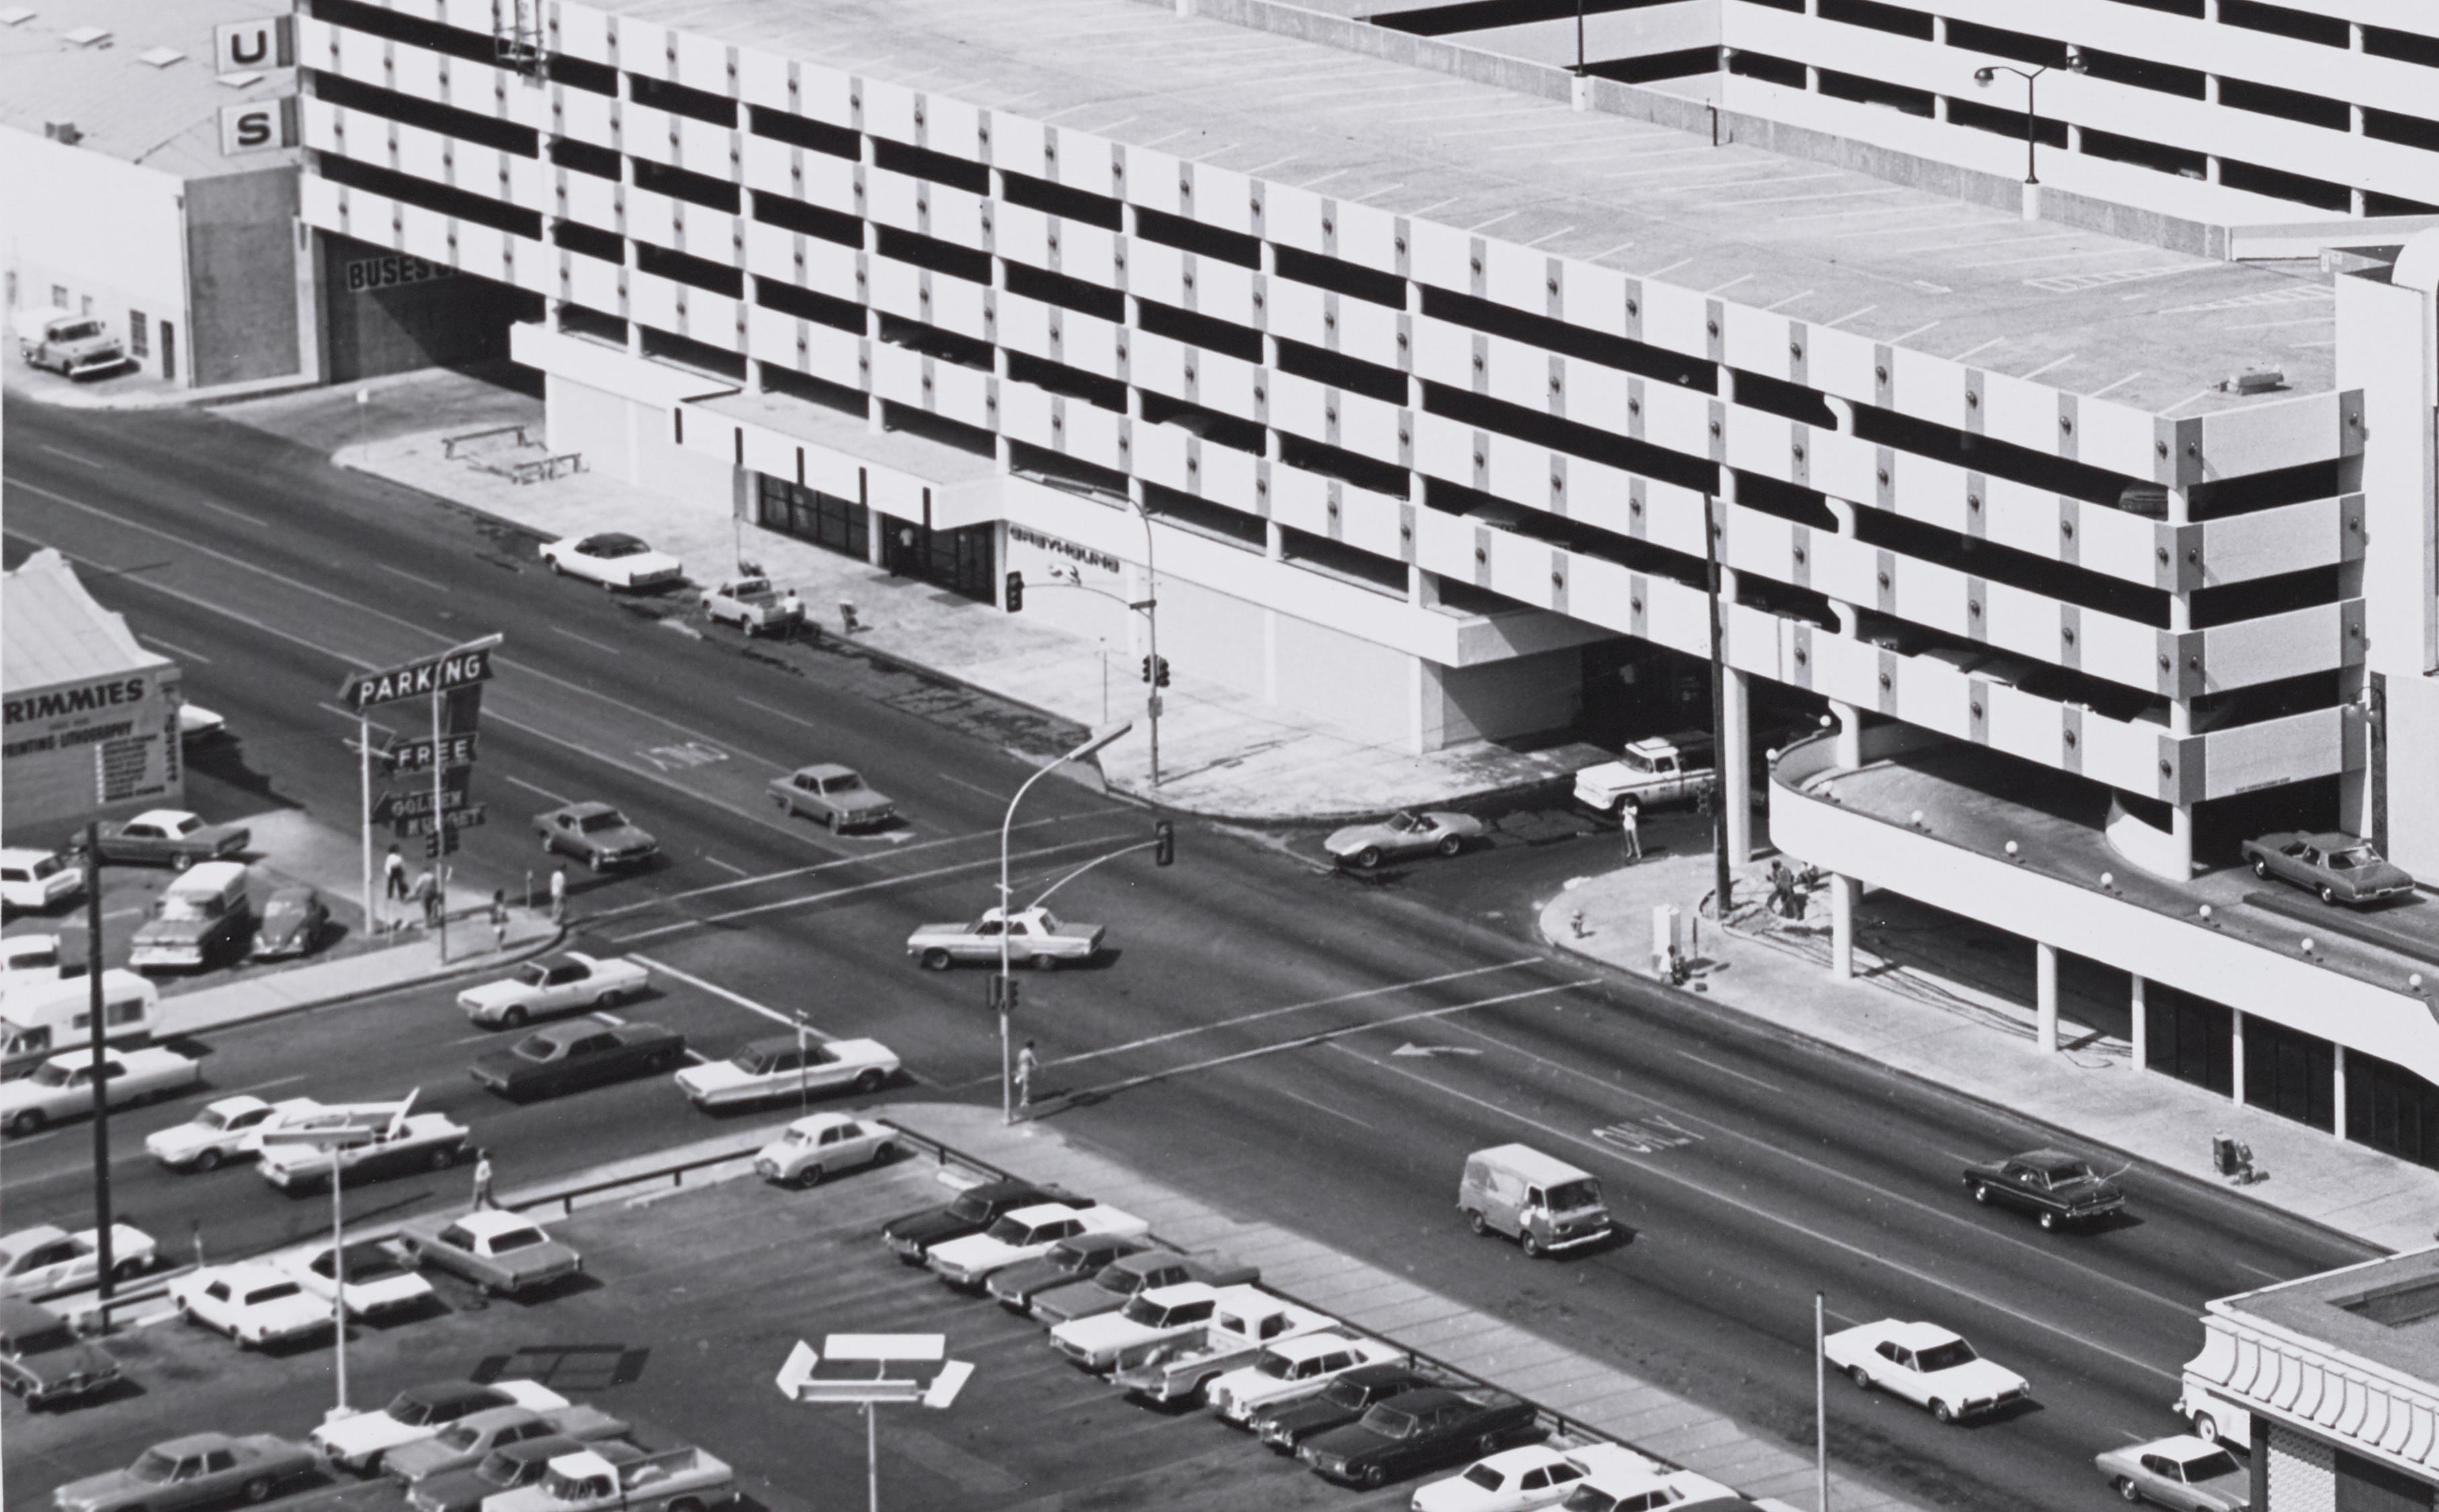 Las Vegas, 1971